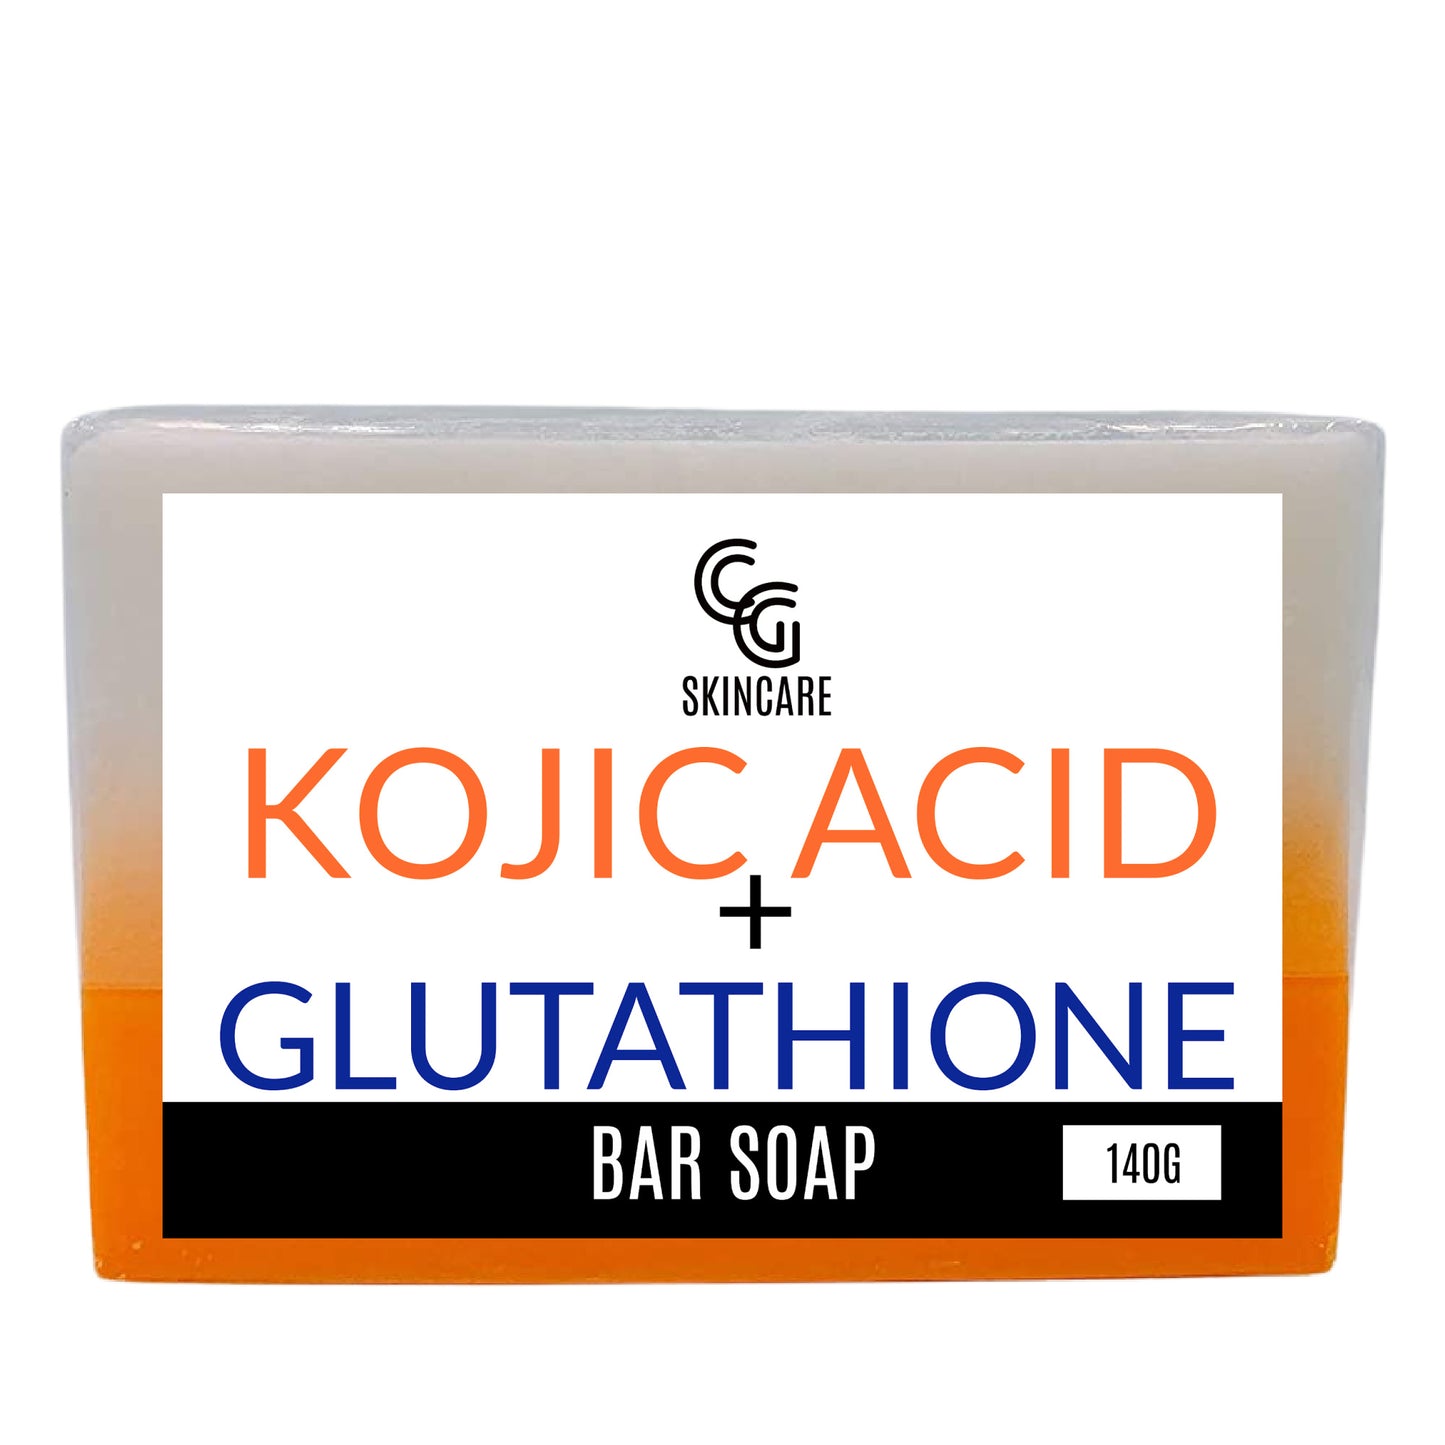 Kojic Acid + Glutathione Brightening Bar Soap